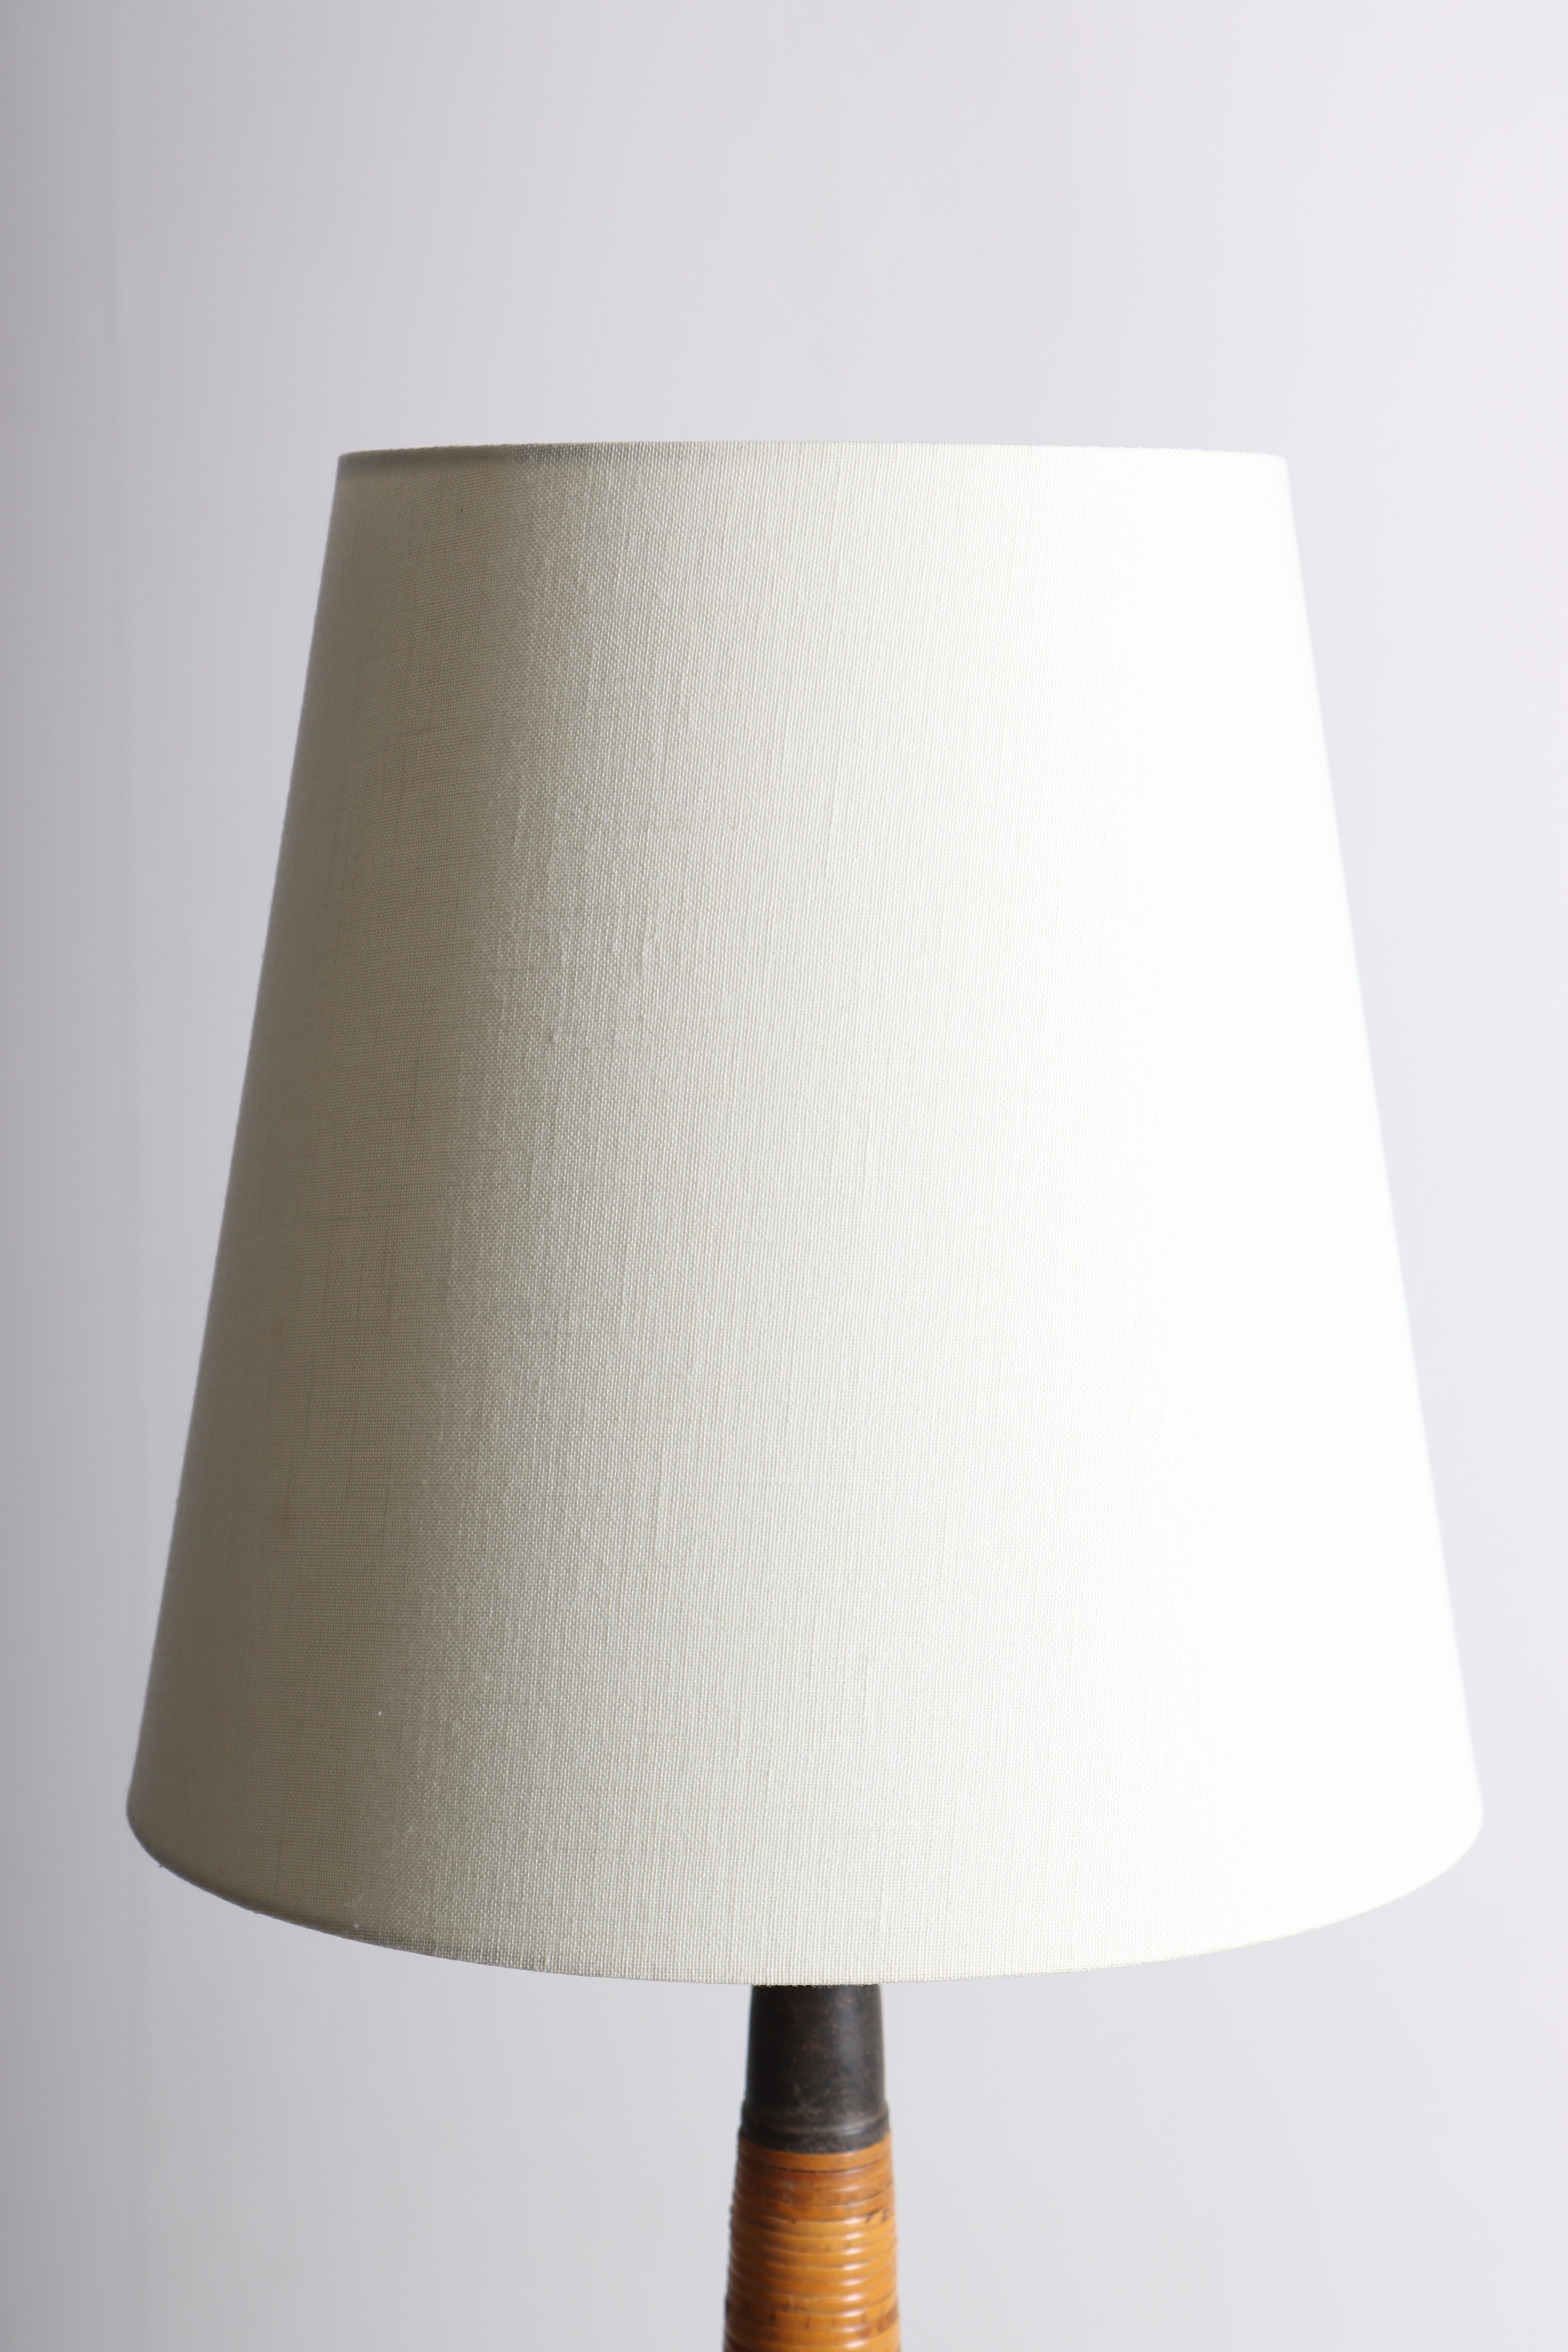 Dekorative Keramiklampe, entworfen und hergestellt von Kähler. Hergestellt in Dänemark in den 1960er Jahren. Toller Originalzustand. Wird mit einem neuen Lampenschirm geliefert.